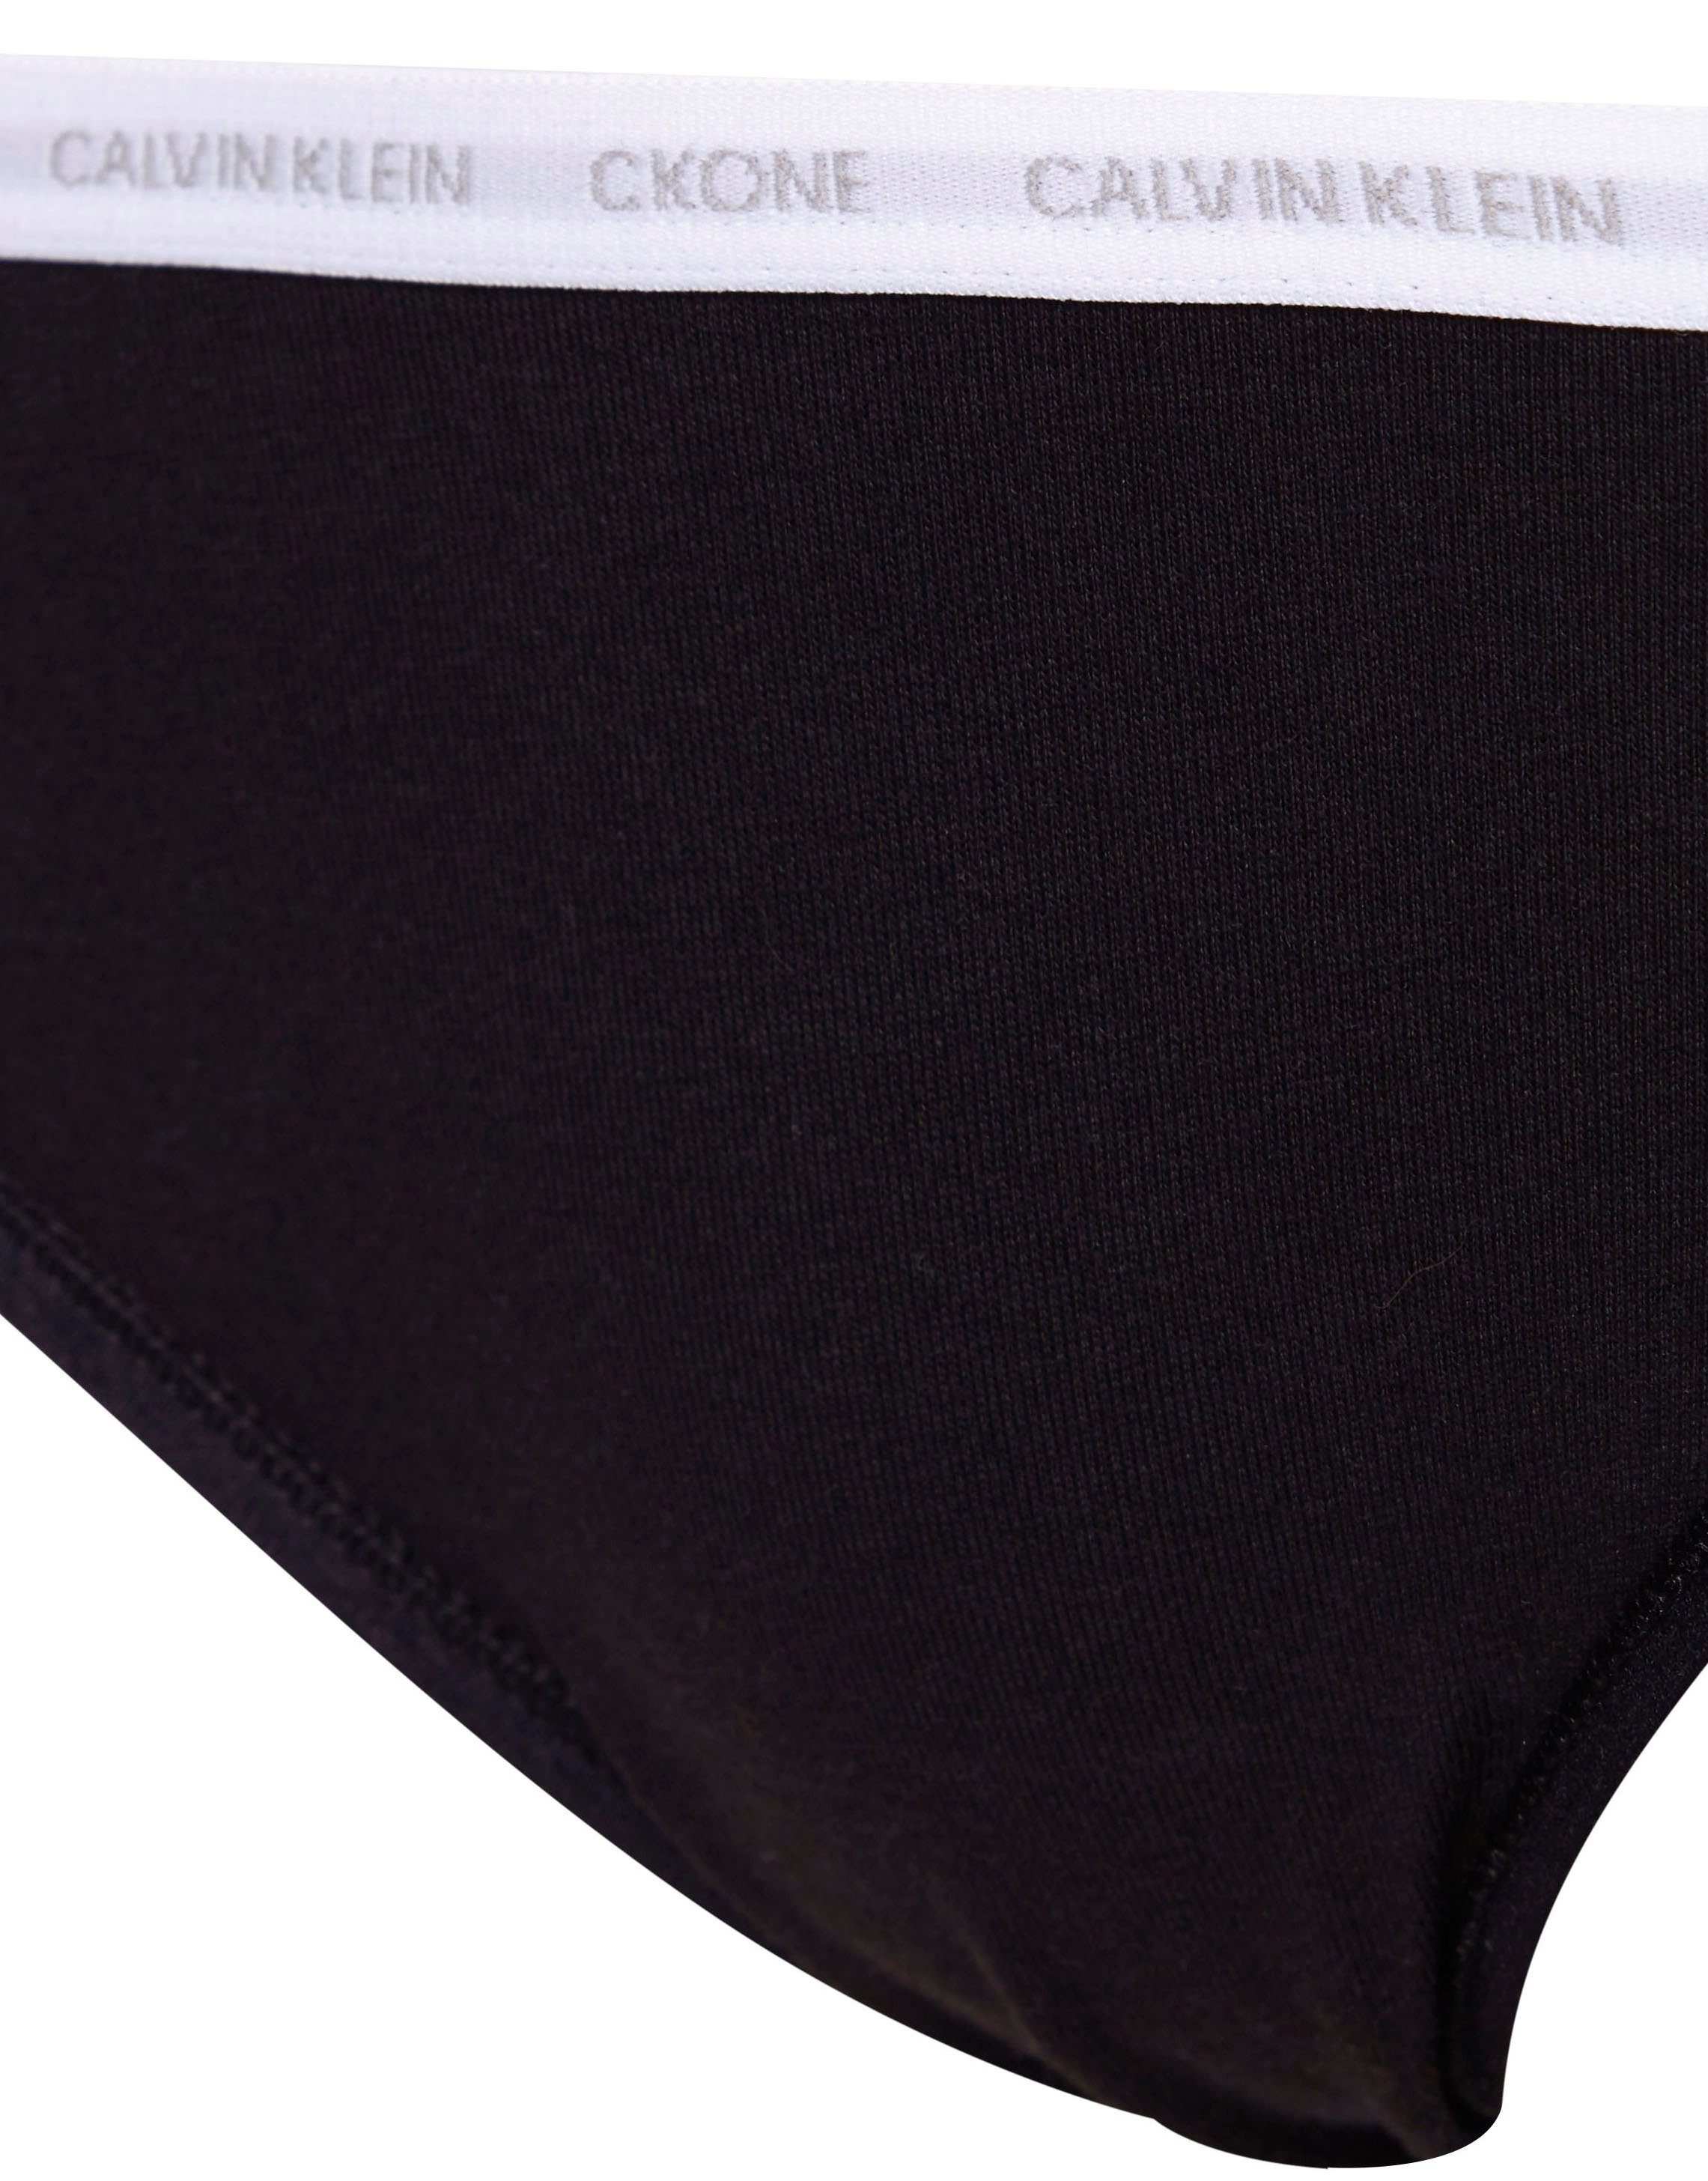 Underwear Klein Logobündchen ONE mit T-String CK Calvin schwarz